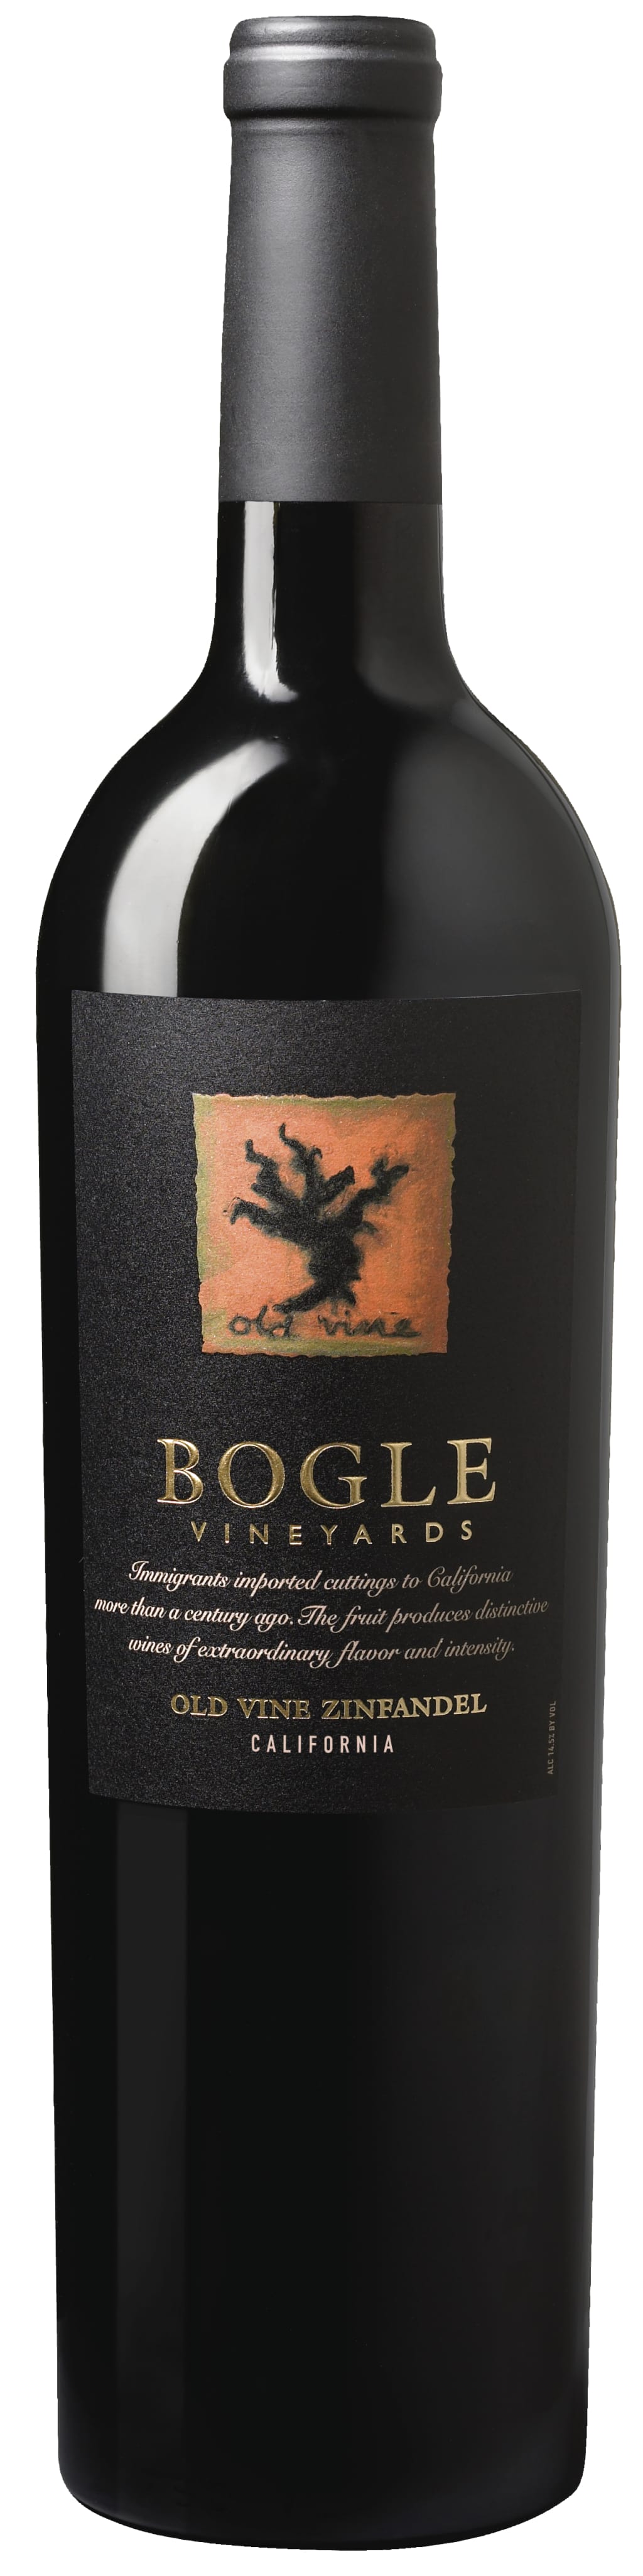 Bogle Vineyards Zinfandel Old Vines 2018